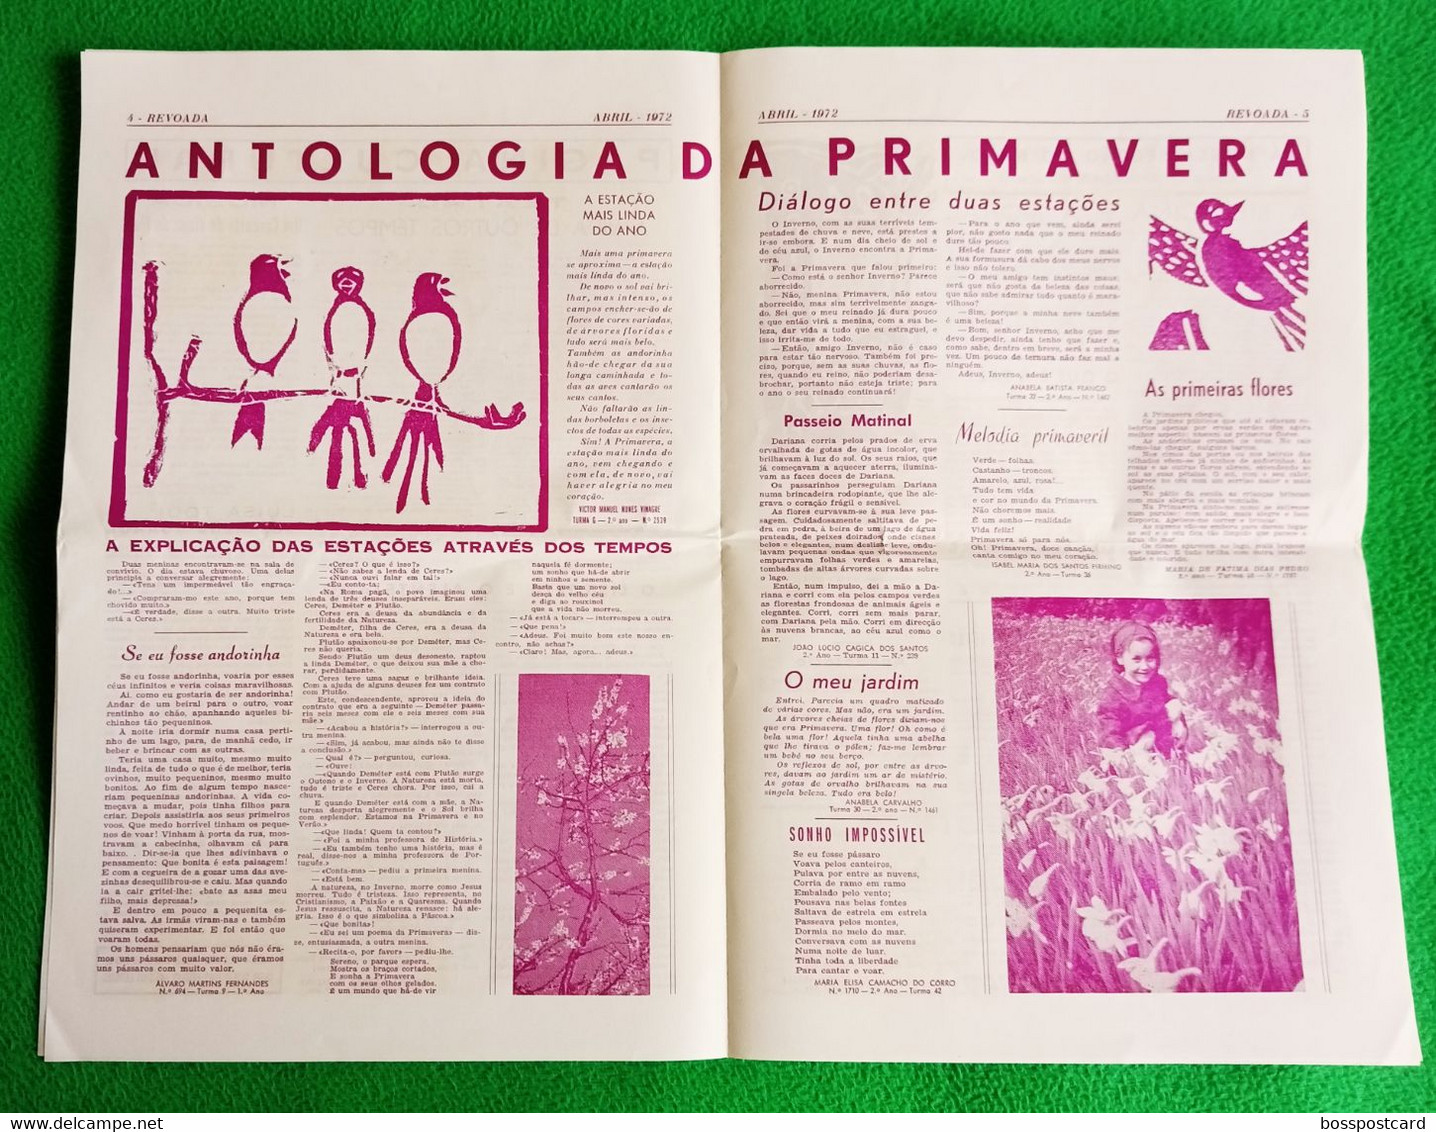 Almada - Jornal Revoada Nº 9, Abril De 1972 - Escola Preparatória De D. António Da Costa - Imprensa - Portugal - Allgemeine Literatur